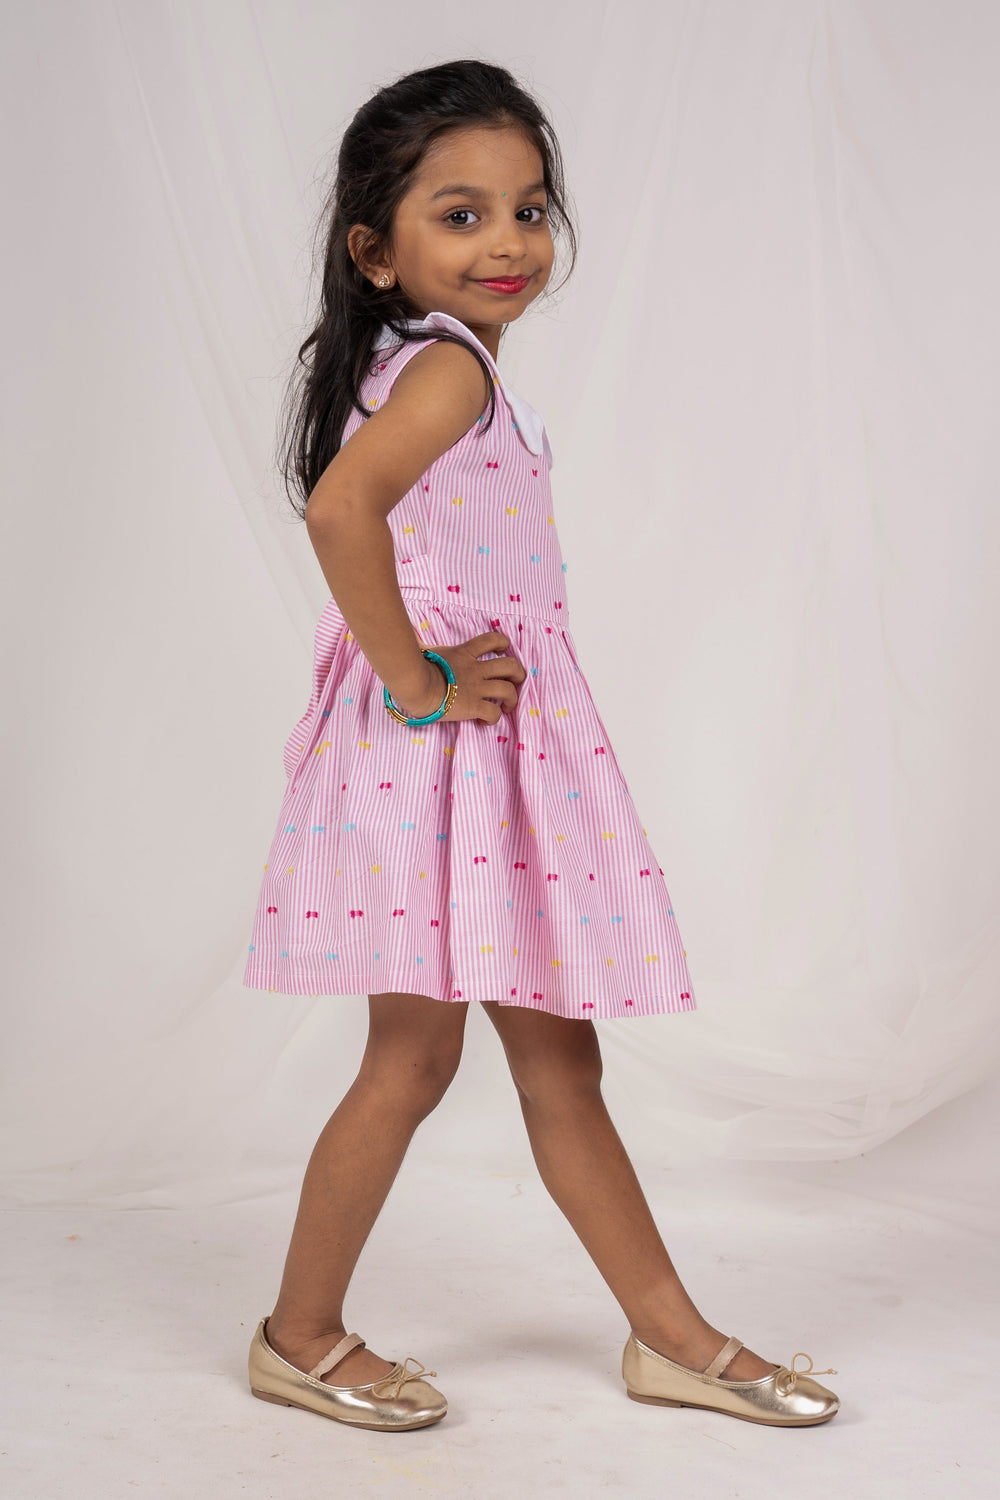 The Nesavu Frocks & Dresses Pink Striped Soft Cotton Peter Pan Collar Frock For Girls psr silks Nesavu